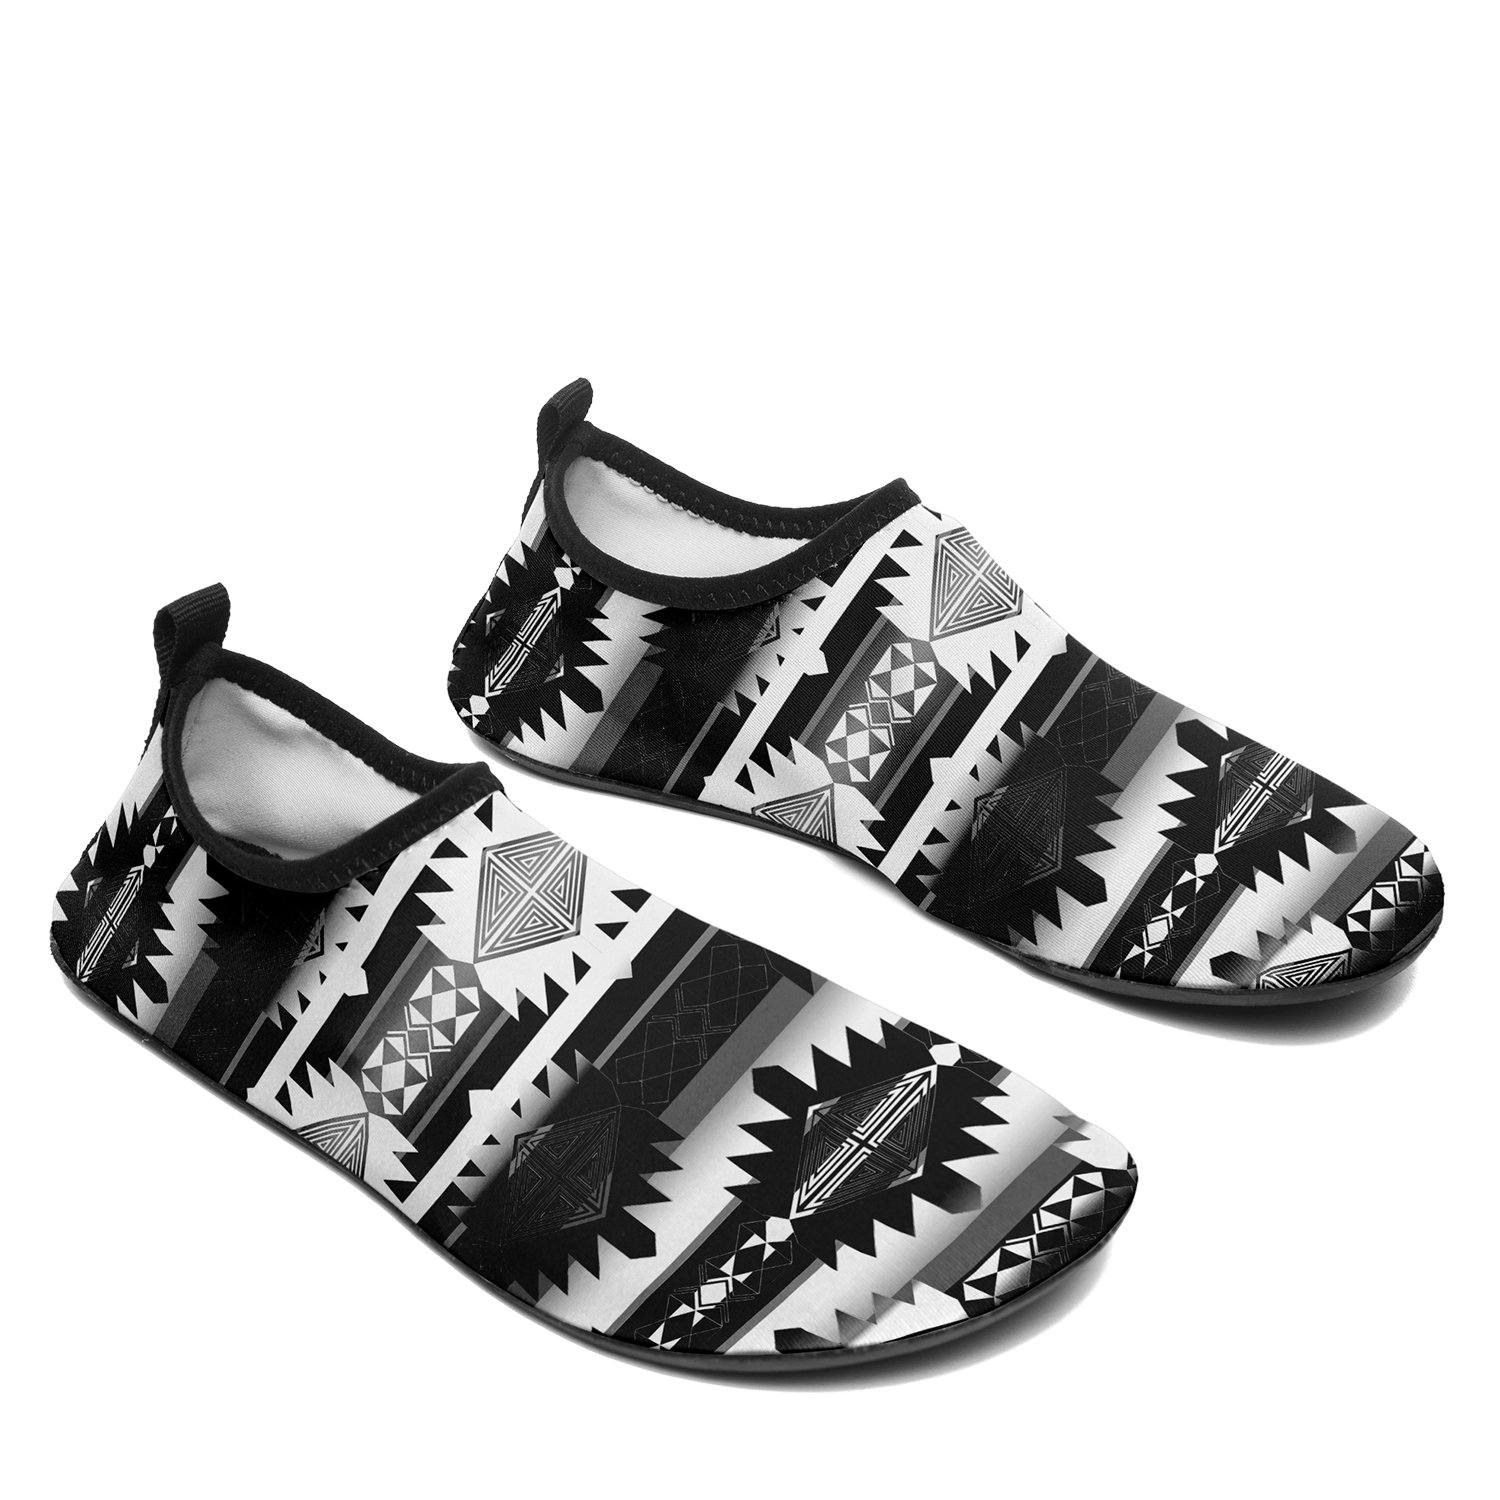 Okotoks Black and White Sockamoccs Slip On Shoes 49 Dzine 